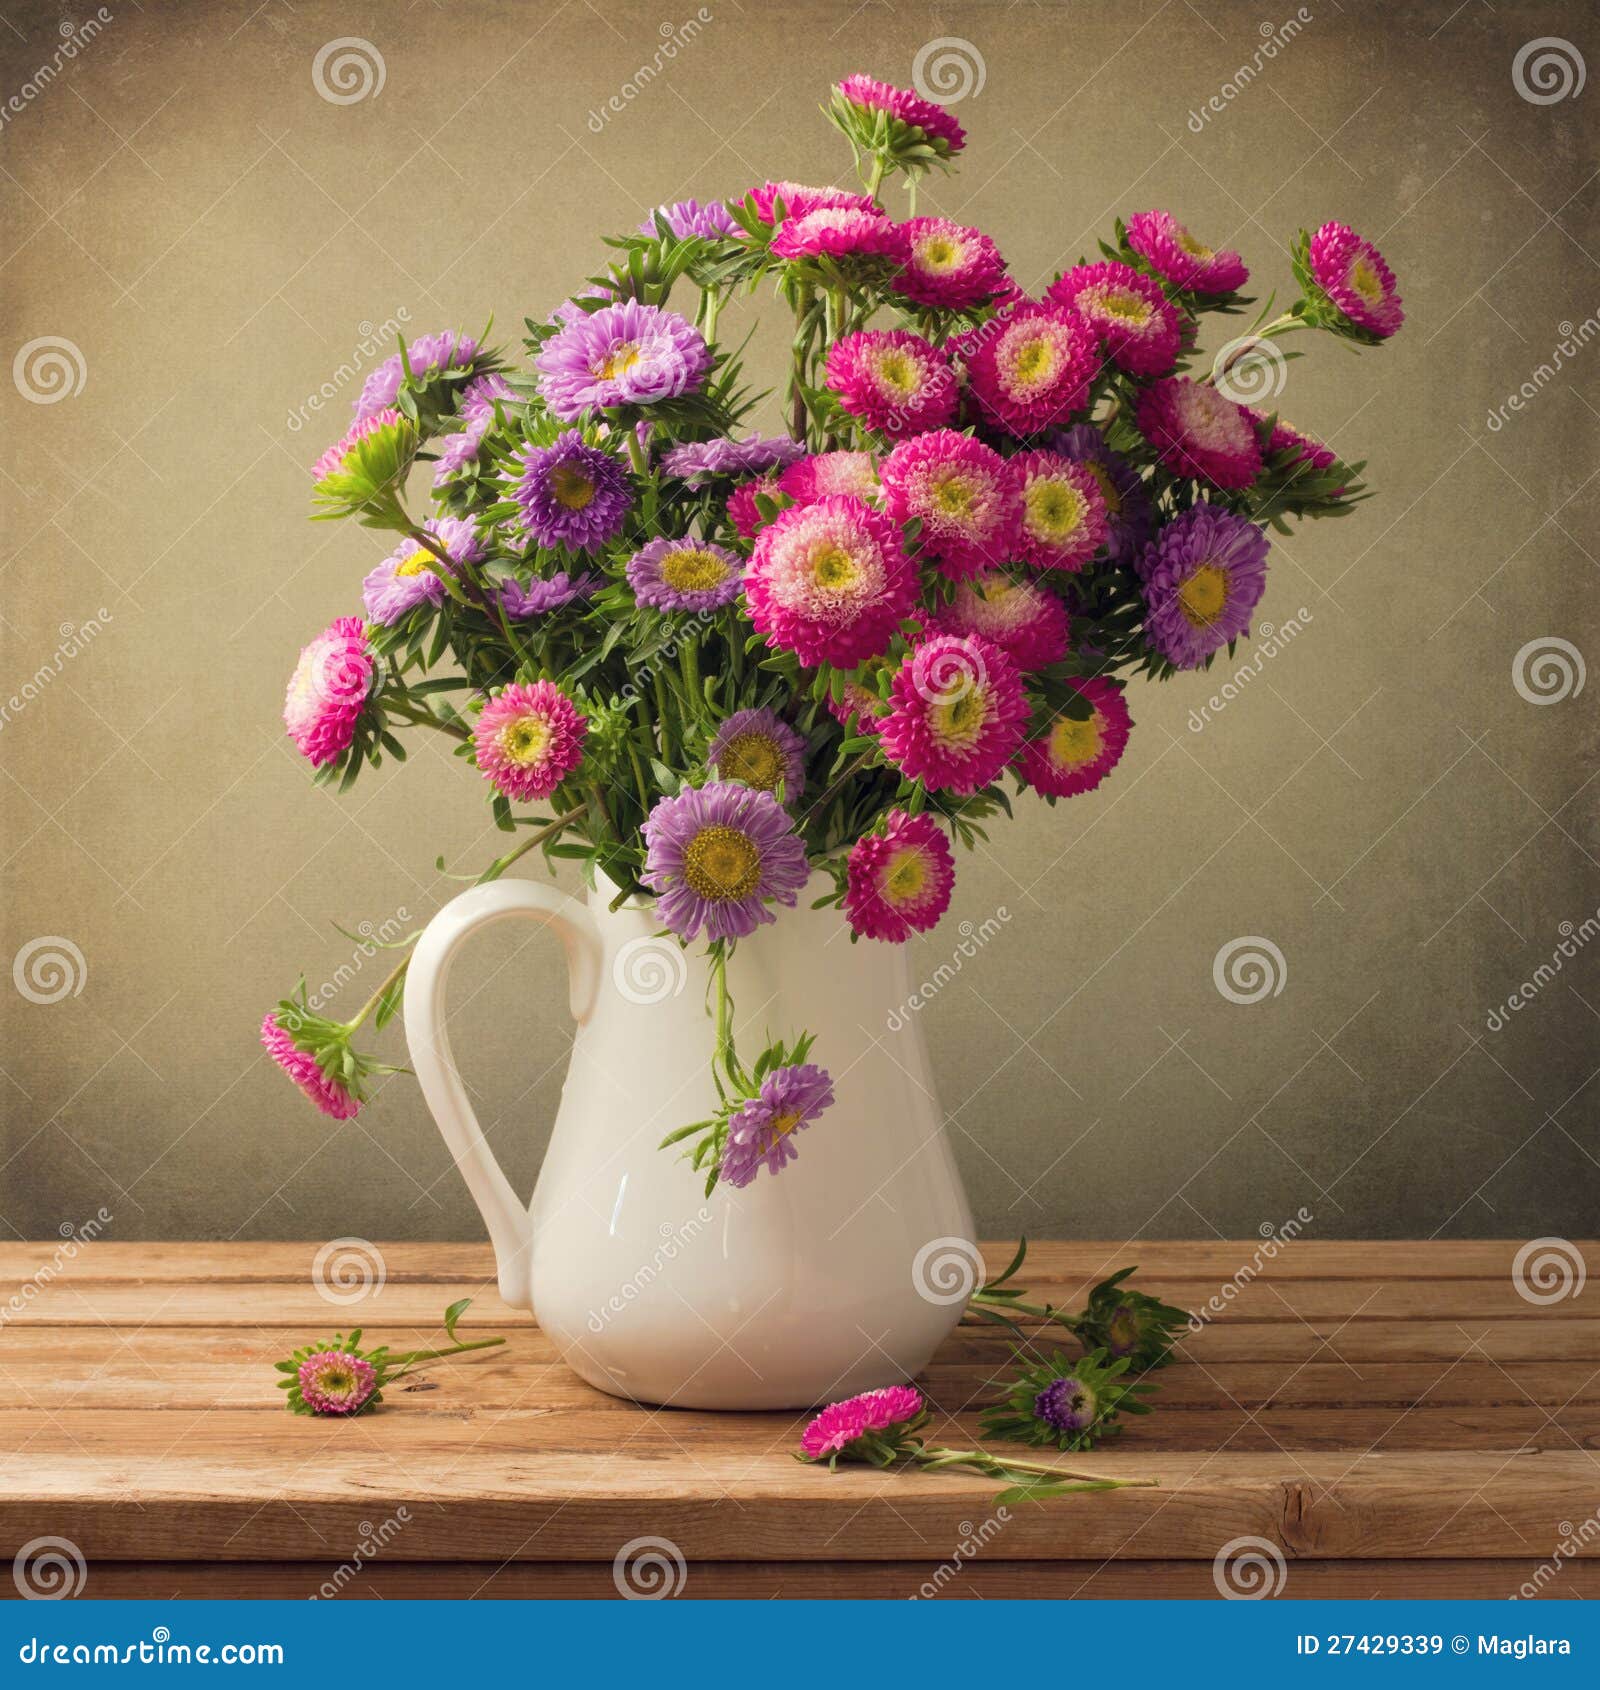 beautiful aster flower bouquet